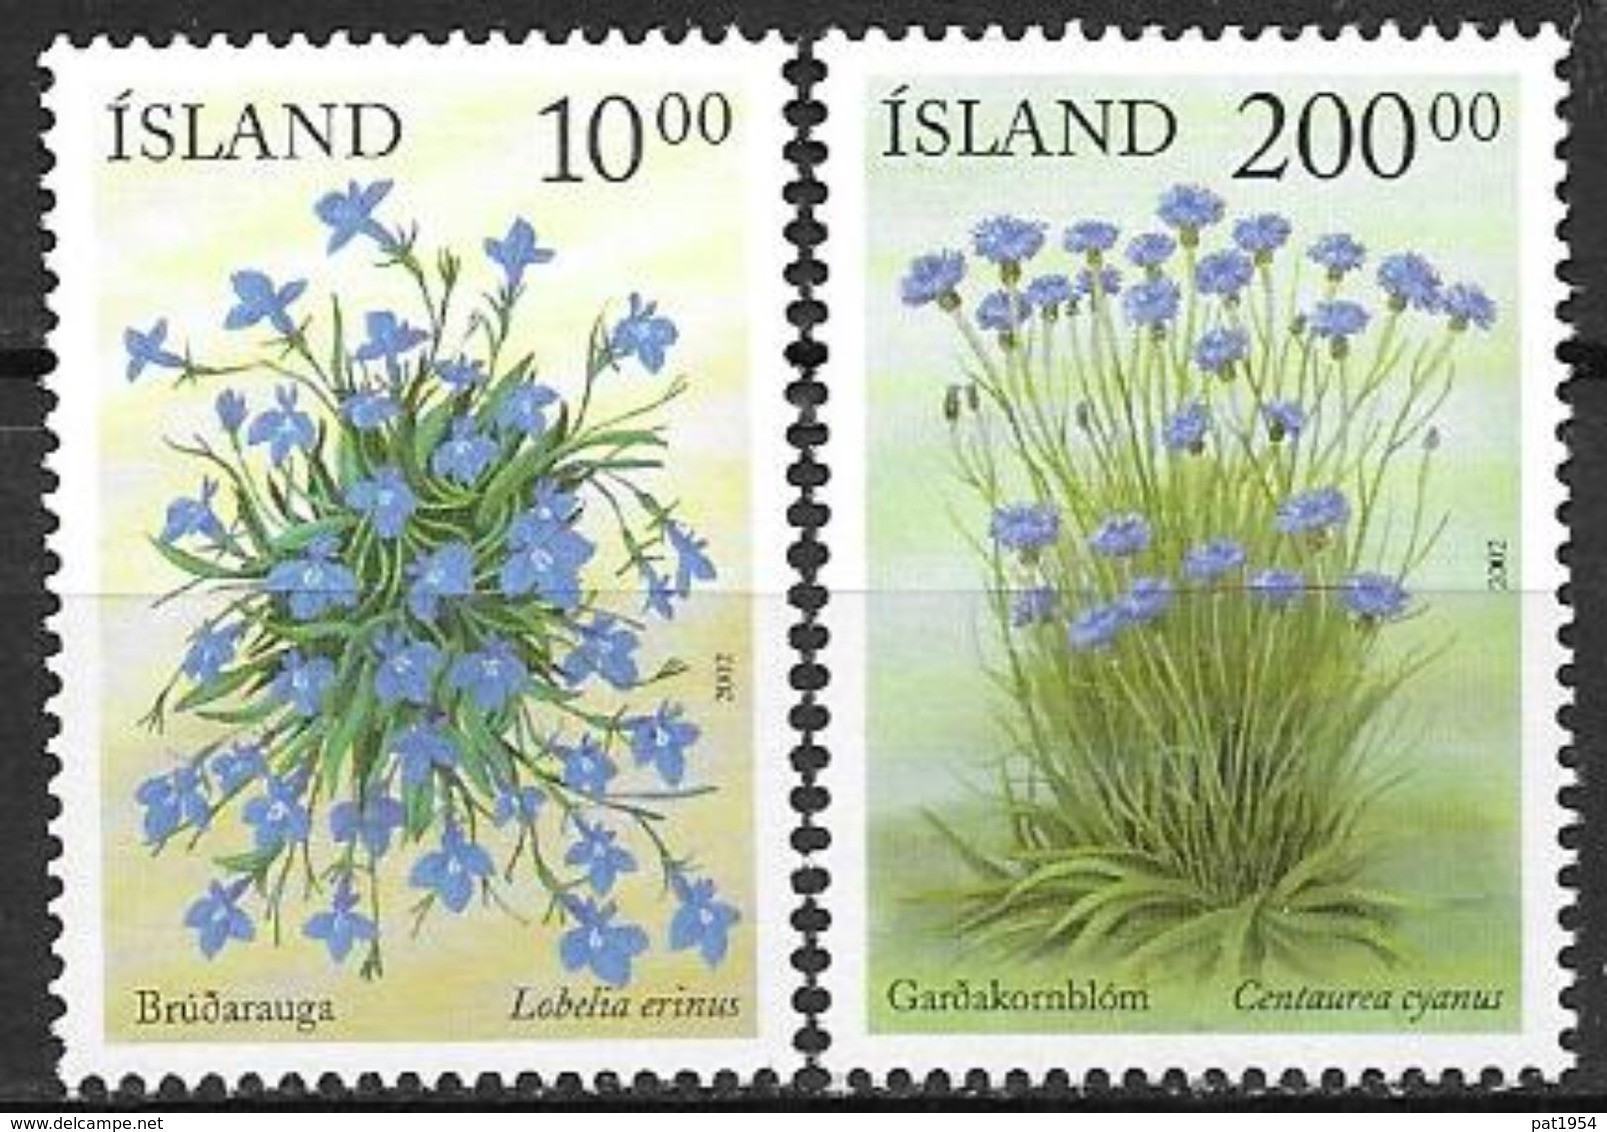 Islande 2002 N°945/946 Neufs** Fleurs D'été - Ongebruikt